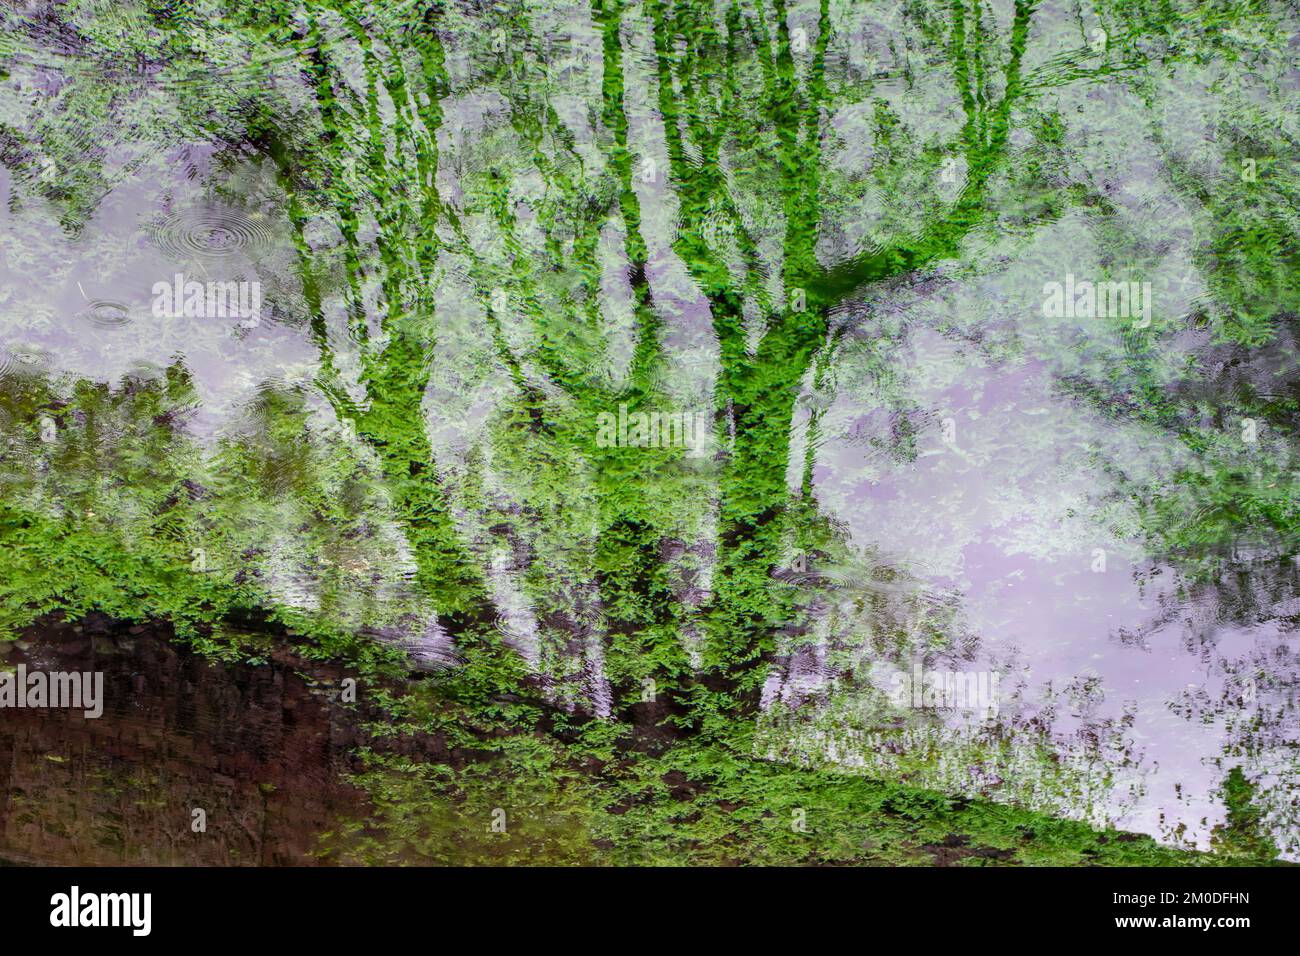 Reflejos de plantas y siluetas de árboles en el agua de un estanque, acuarela natural Stockfoto